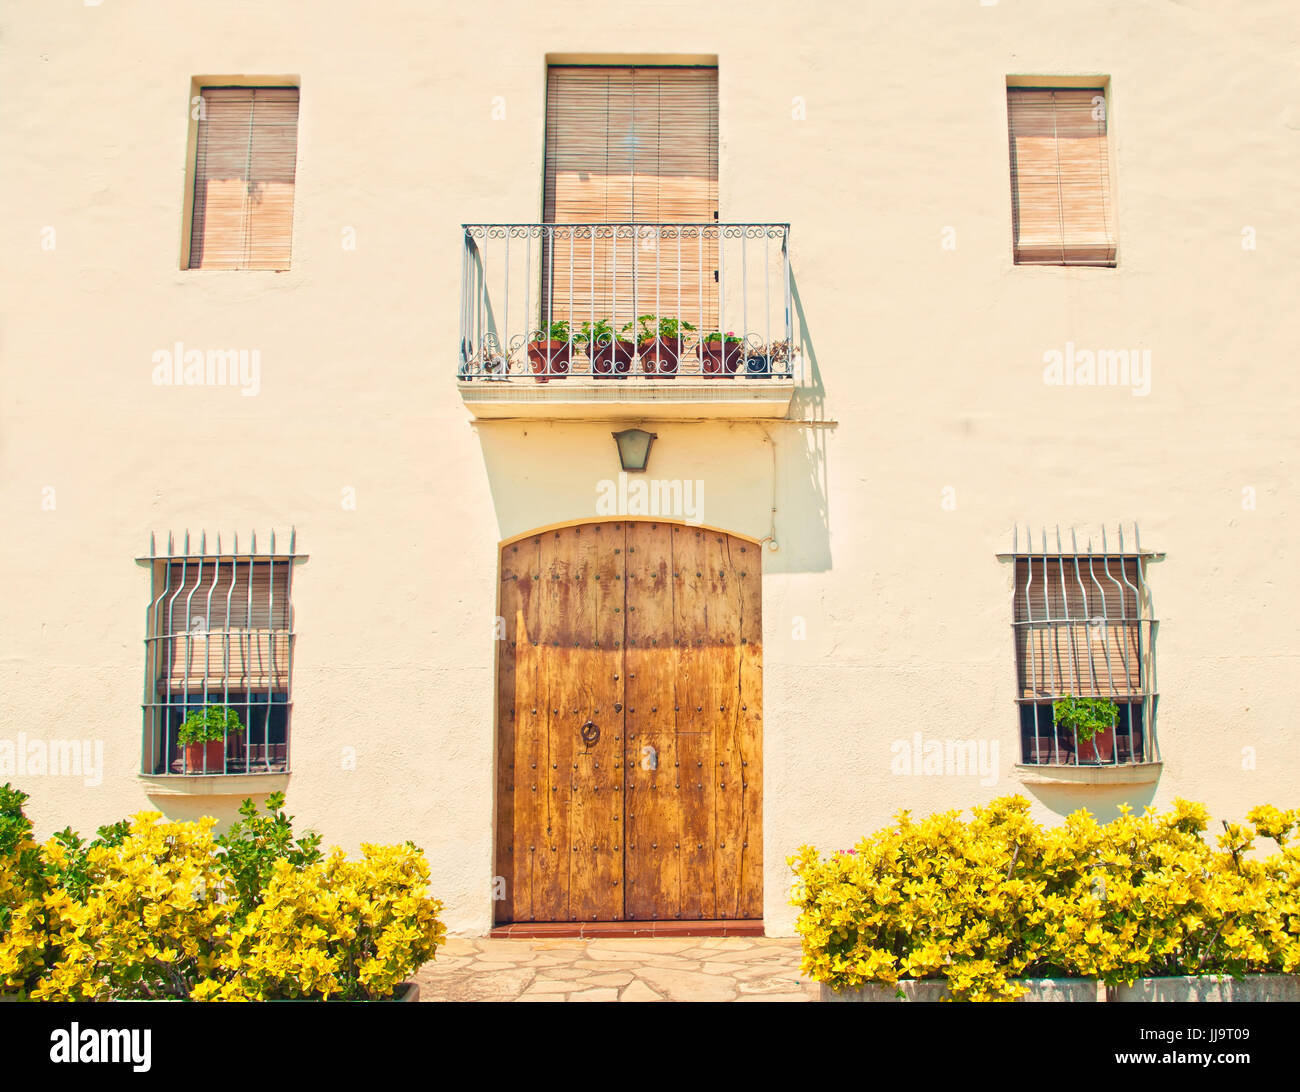 Kreuz-bearbeitetes Bild des typischen europäischen Hausfassade mit altmodischen hölzernen Tür, Fenstern und Pflanzen in Töpfen an sonnigen Sommertag, Spanien Stockfoto